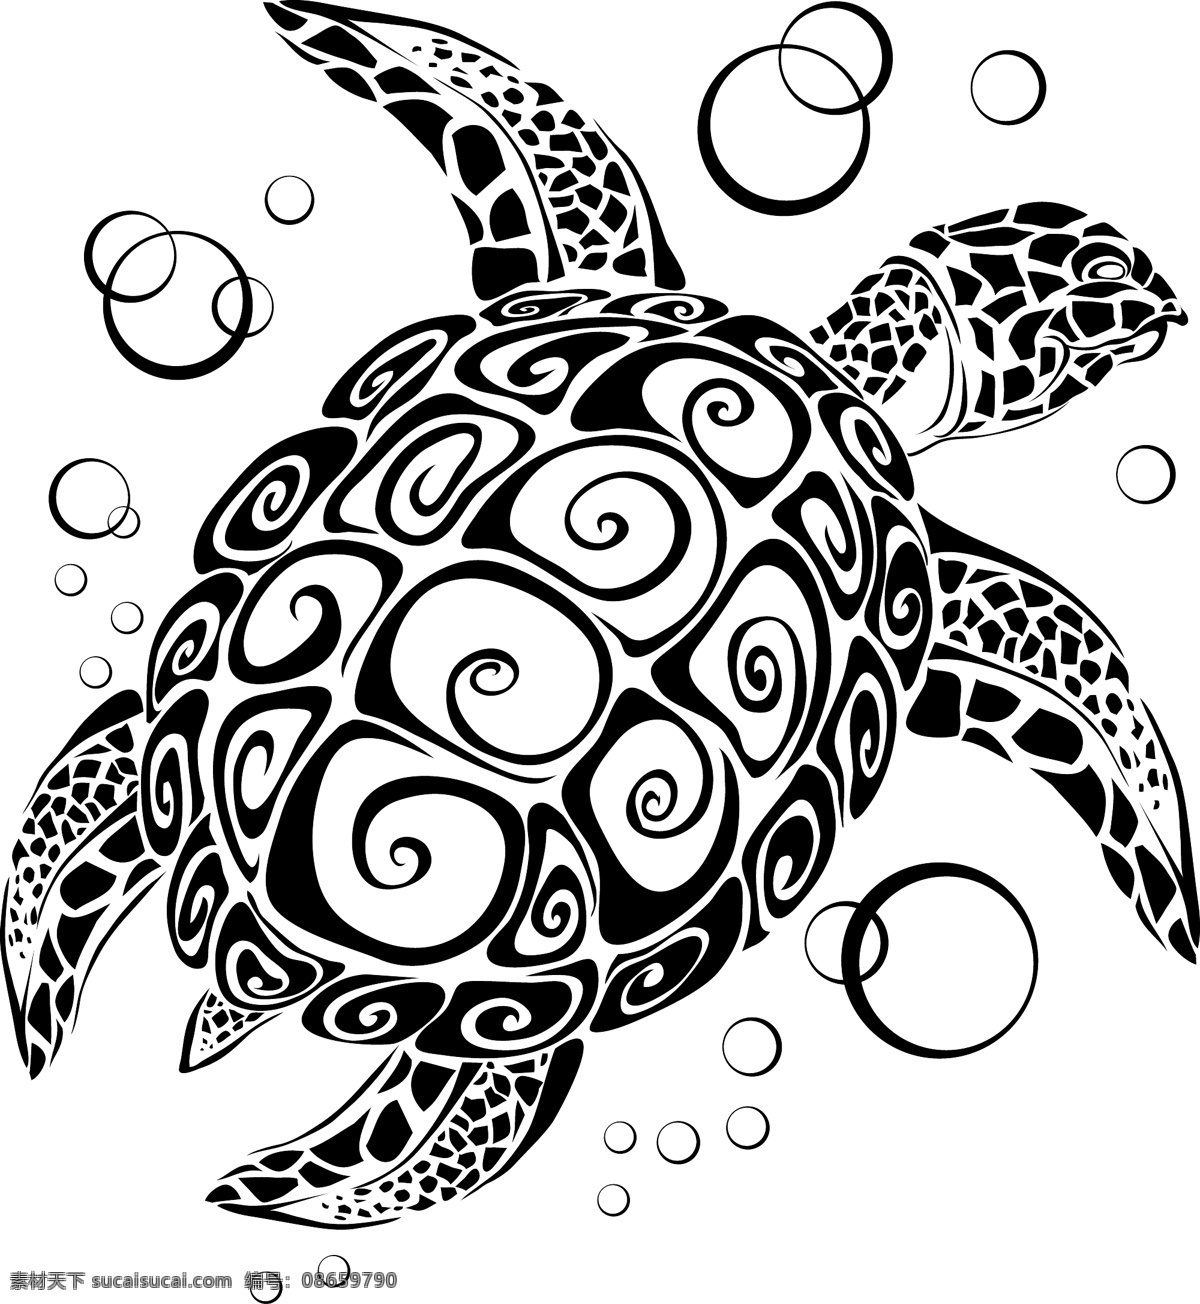 海龟 乌龟 水底生物 花纹 古典花纹 龟纹 复古花纹 动物 爬行动物 两栖动物 生物世界 海洋生物 野生动物 矢量